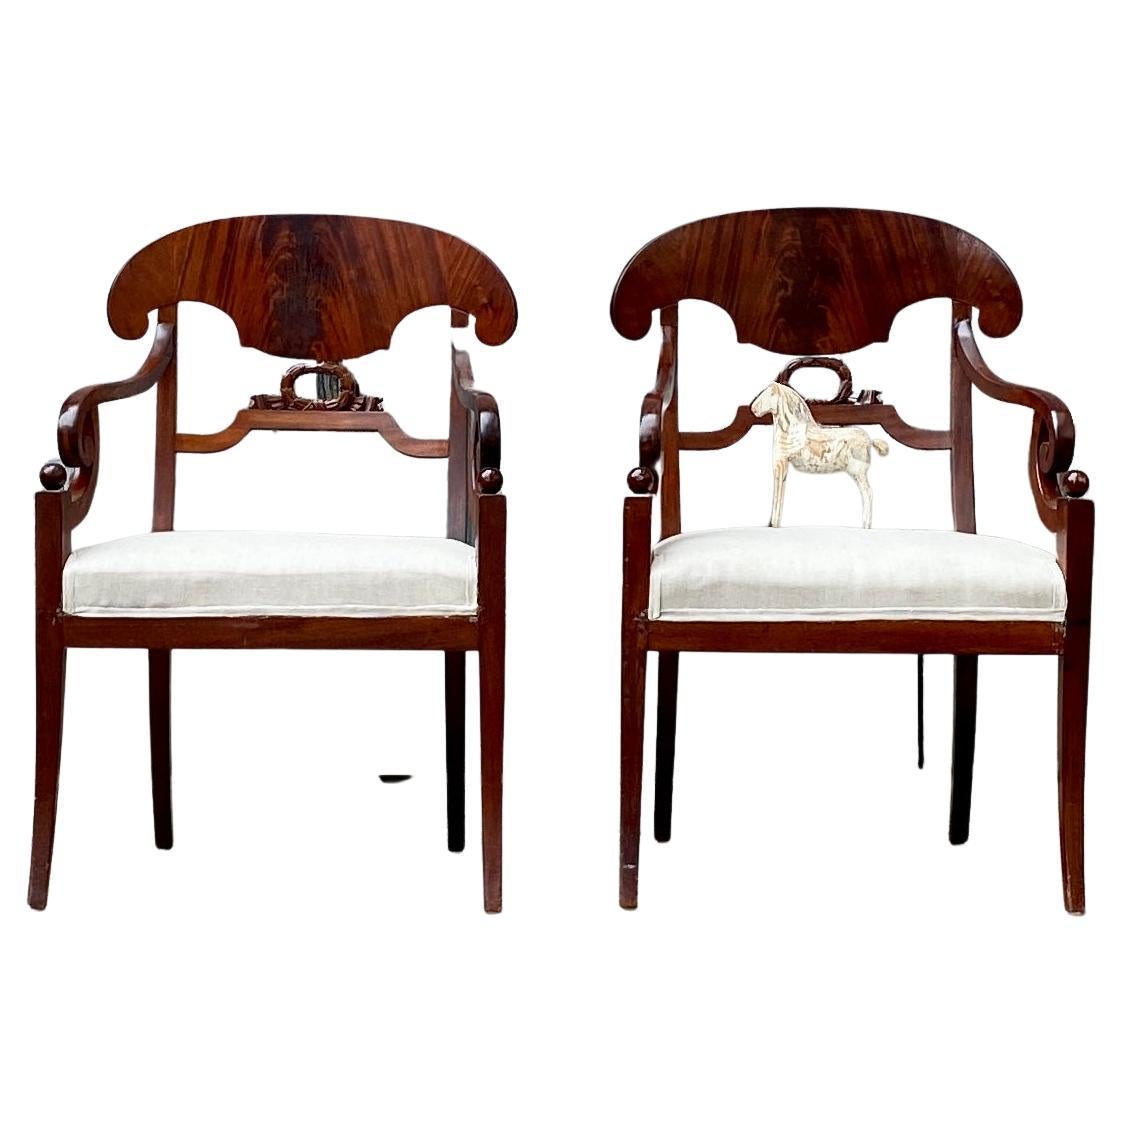 Paar Stockholmer Mahagoni-Sessel aus der Empire-/Karl Johan-Periode, ca. 1810-1830 Schweden.
Ein Paar Sessel sind in einem schönen dunkelbraunen Mahagoni furniert und haben ein sehr klassisches Design mit einer geschnitzten Mittelverzierung. Leichte